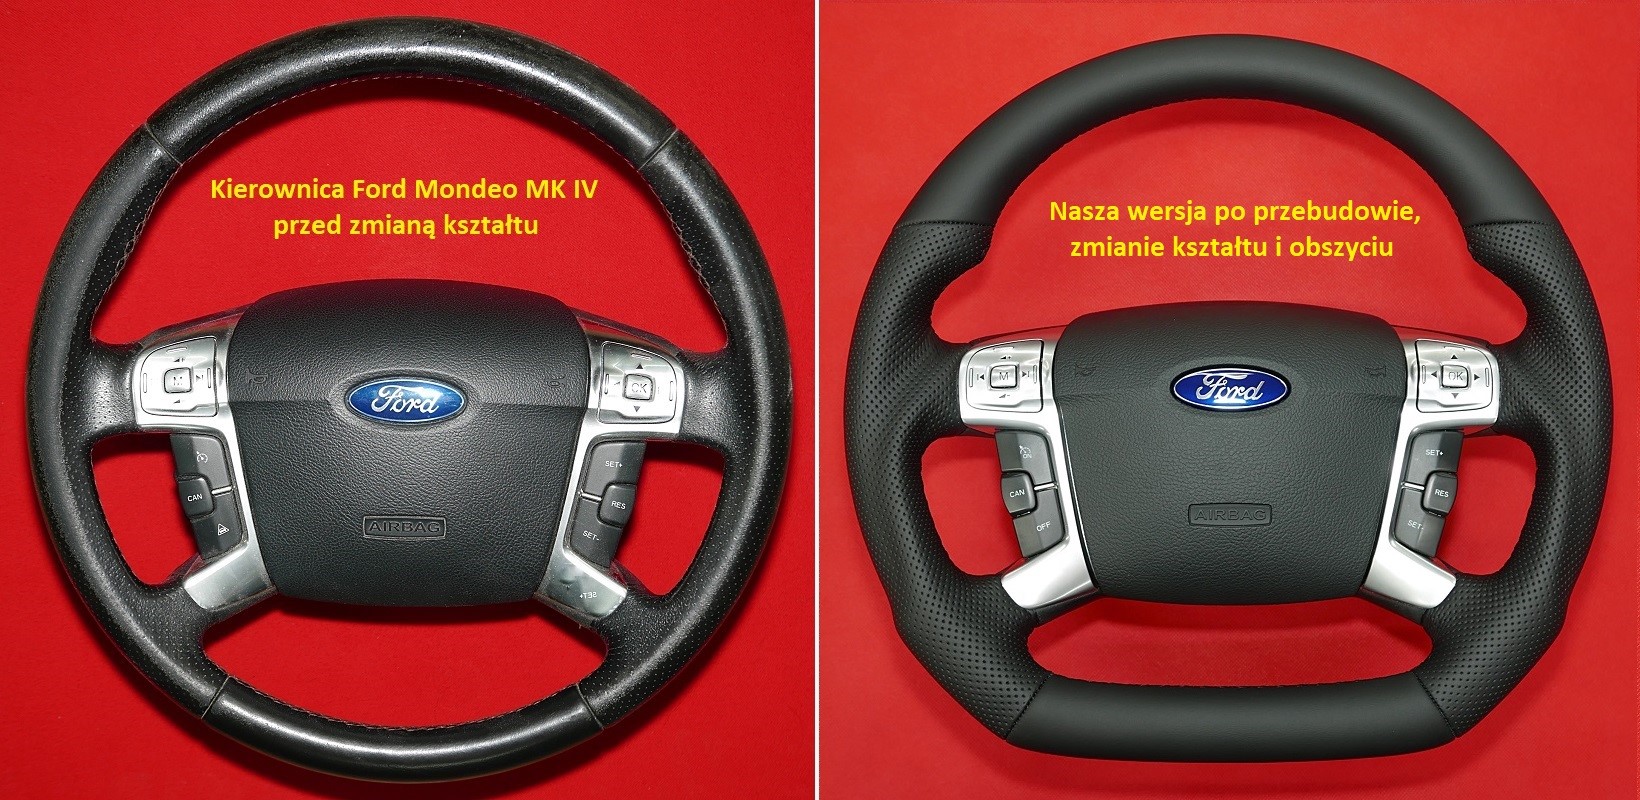 Kierownica Ford Mondeo Galaxy tuning modyfikacja spłaszczenie obszycie